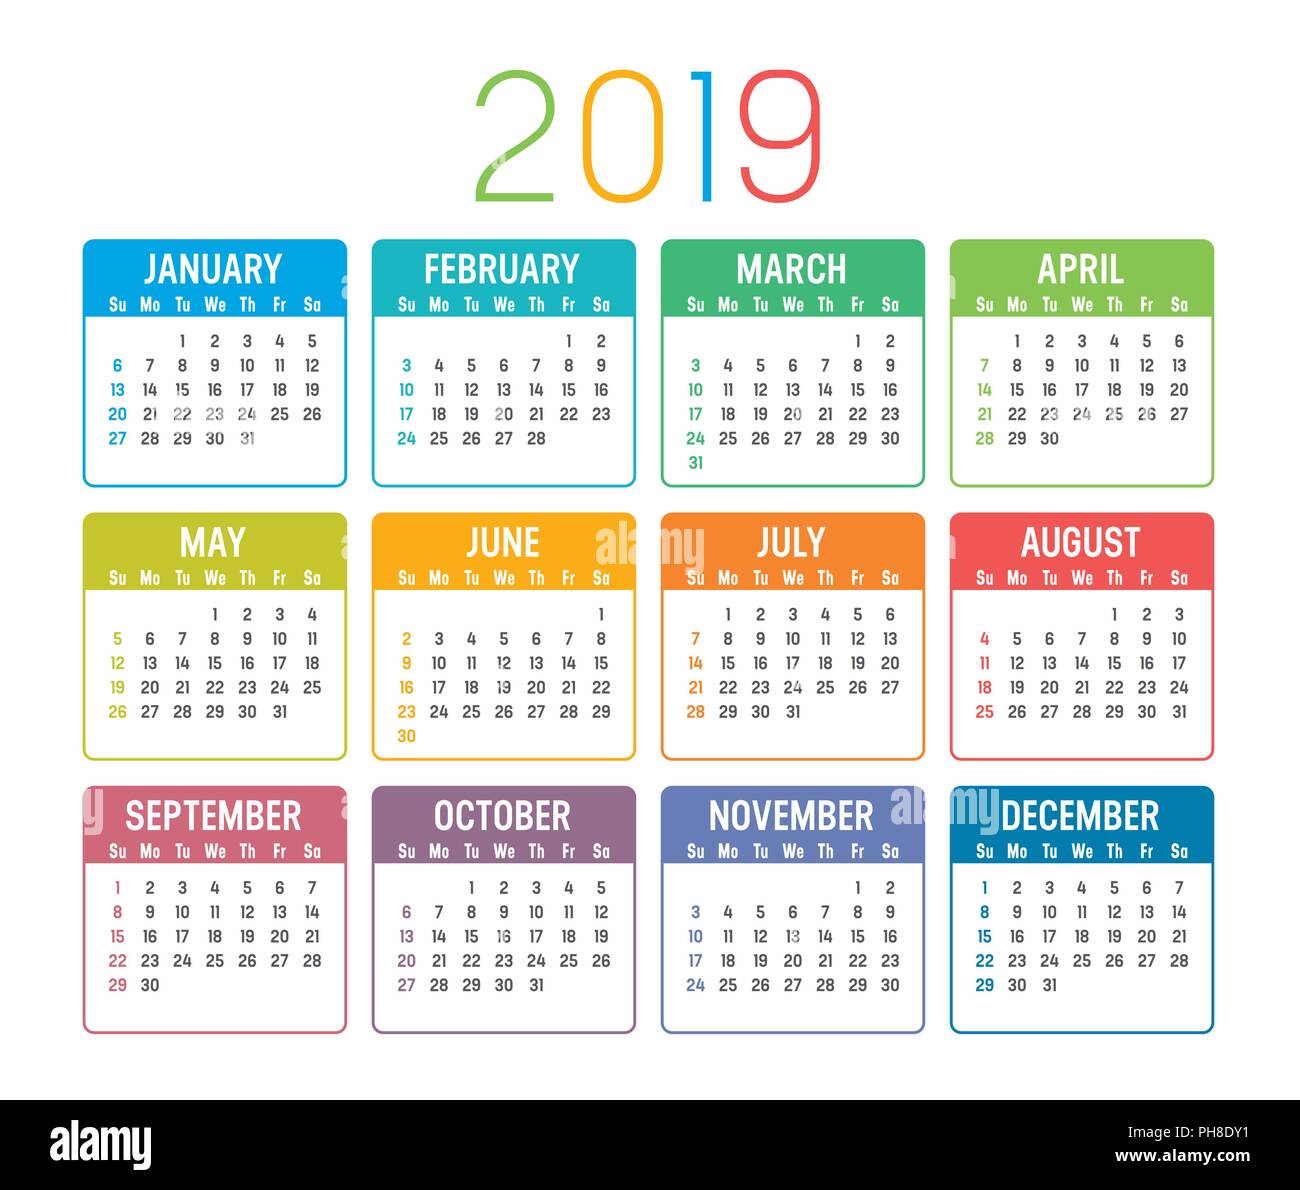 Buntes Jahr 2019 Kalender auf einem weissem Hintergrund Stock-Vektorgrafik  - Alamy